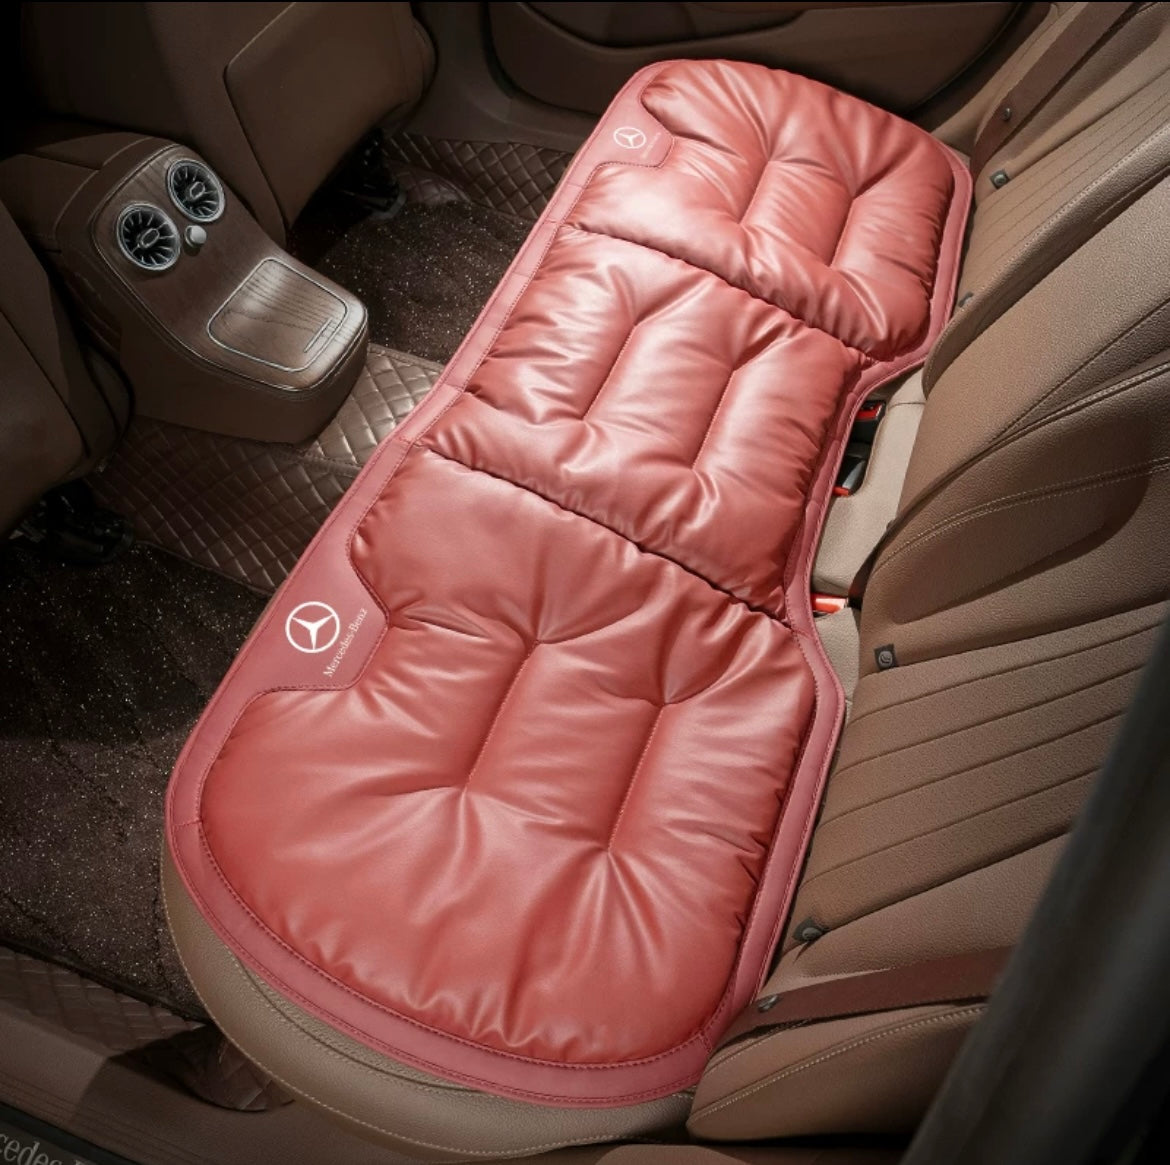 Personalisiertes Kissen für den Rücksitz des Autos